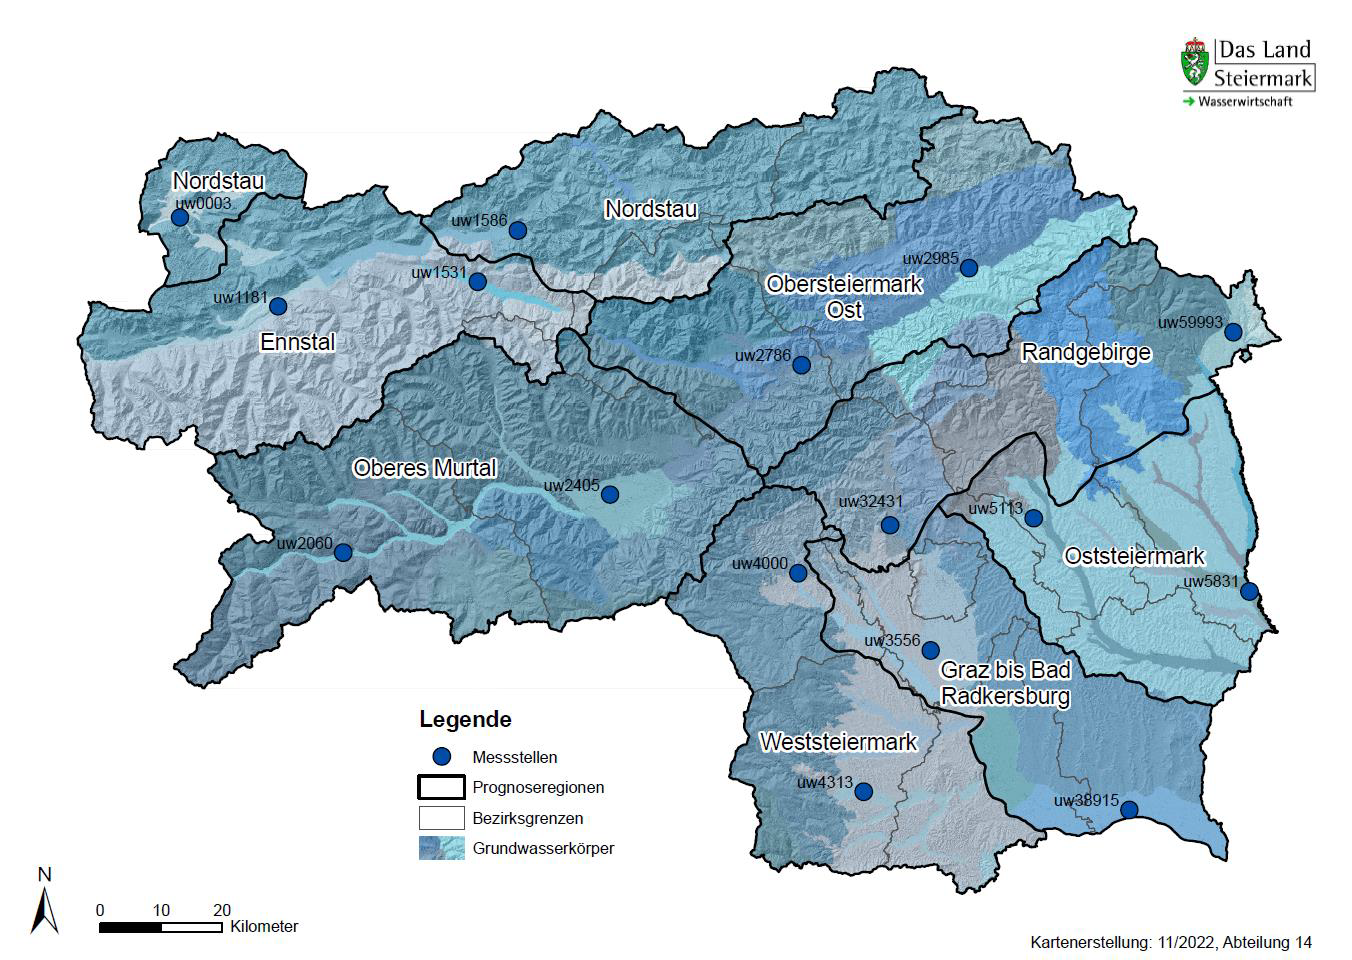 Steiermark-Landkarte mit eingezeichneten Messtellen, Prognoseregionen, Grundwasserkörper und Bezirksgrenzen